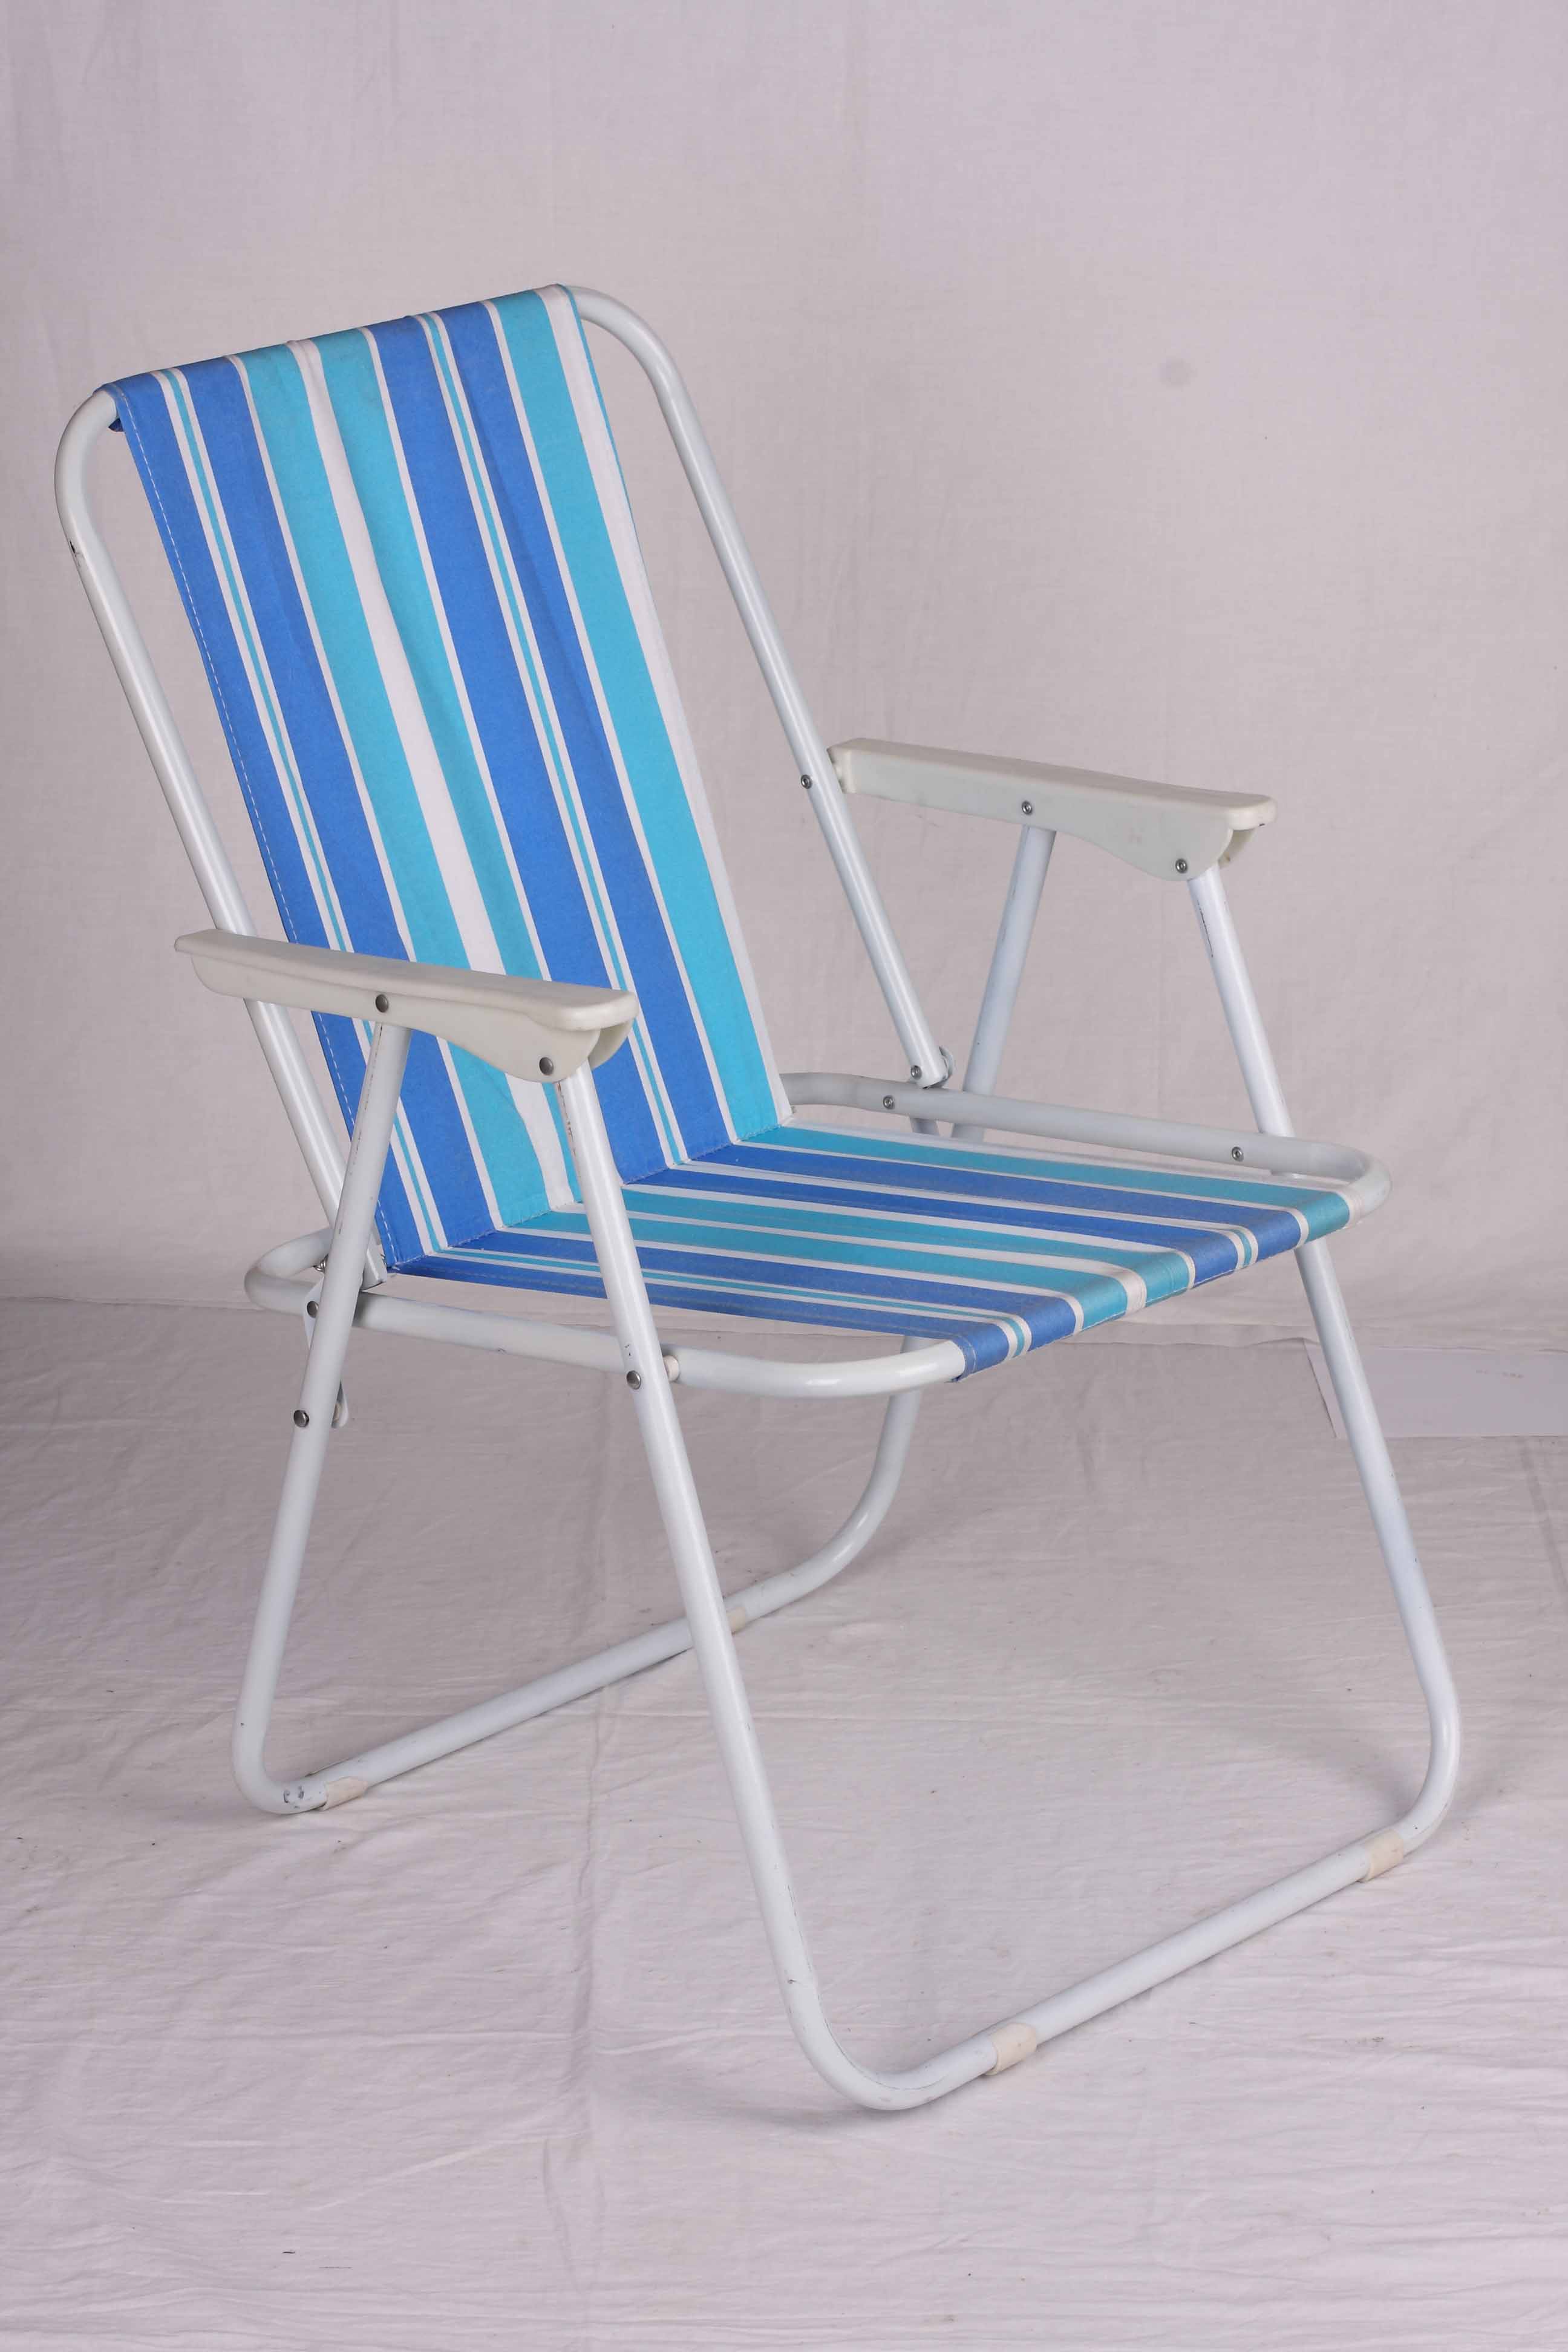 ins风沙滩风沙滩椅折叠椅钓鱼椅写生椅